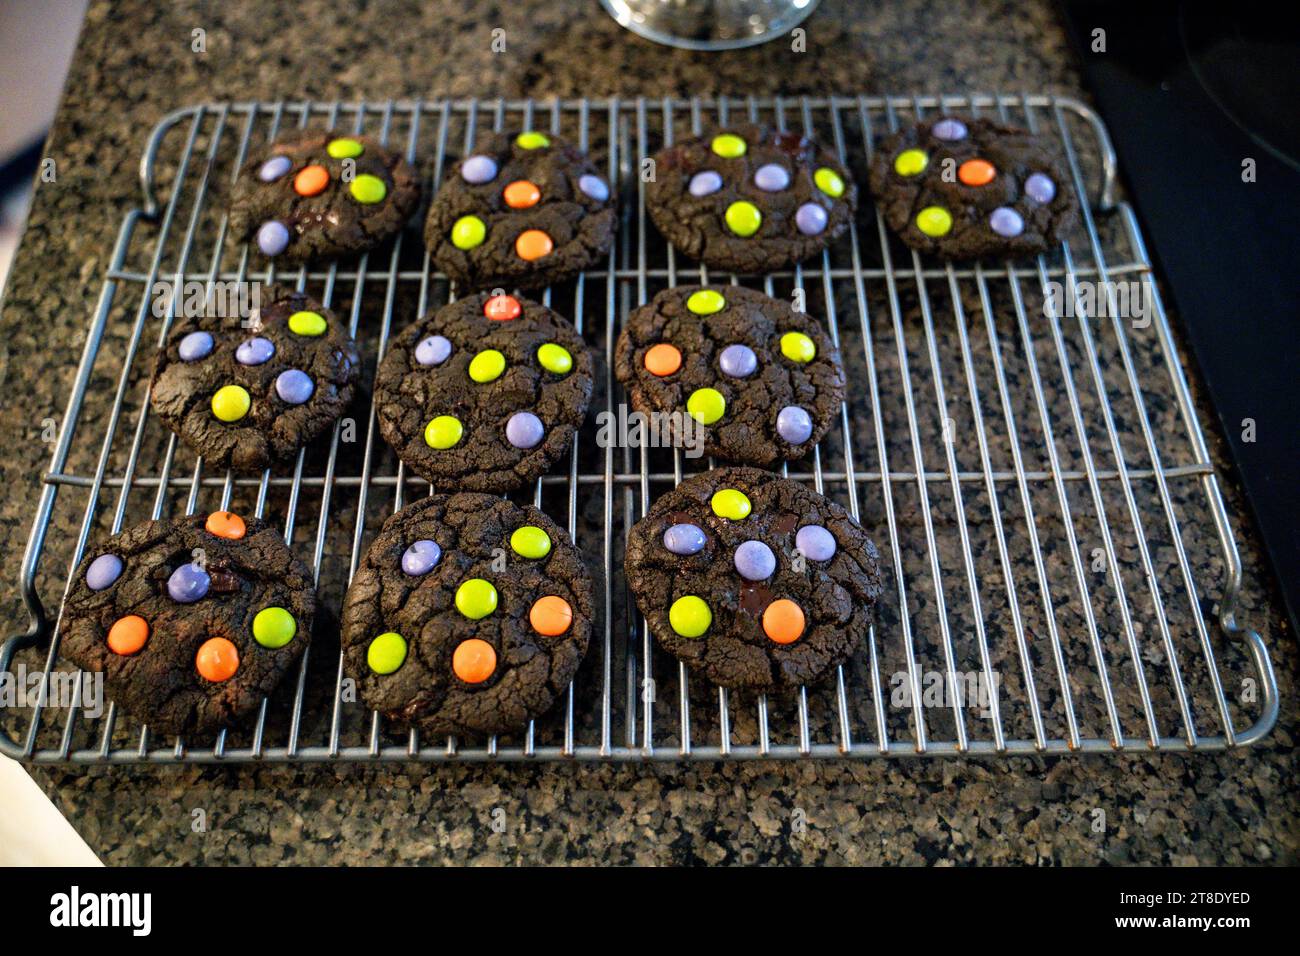 Vue de dessus des biscuits au chocolat cuits au four sur la grille de refroidissement Banque D'Images